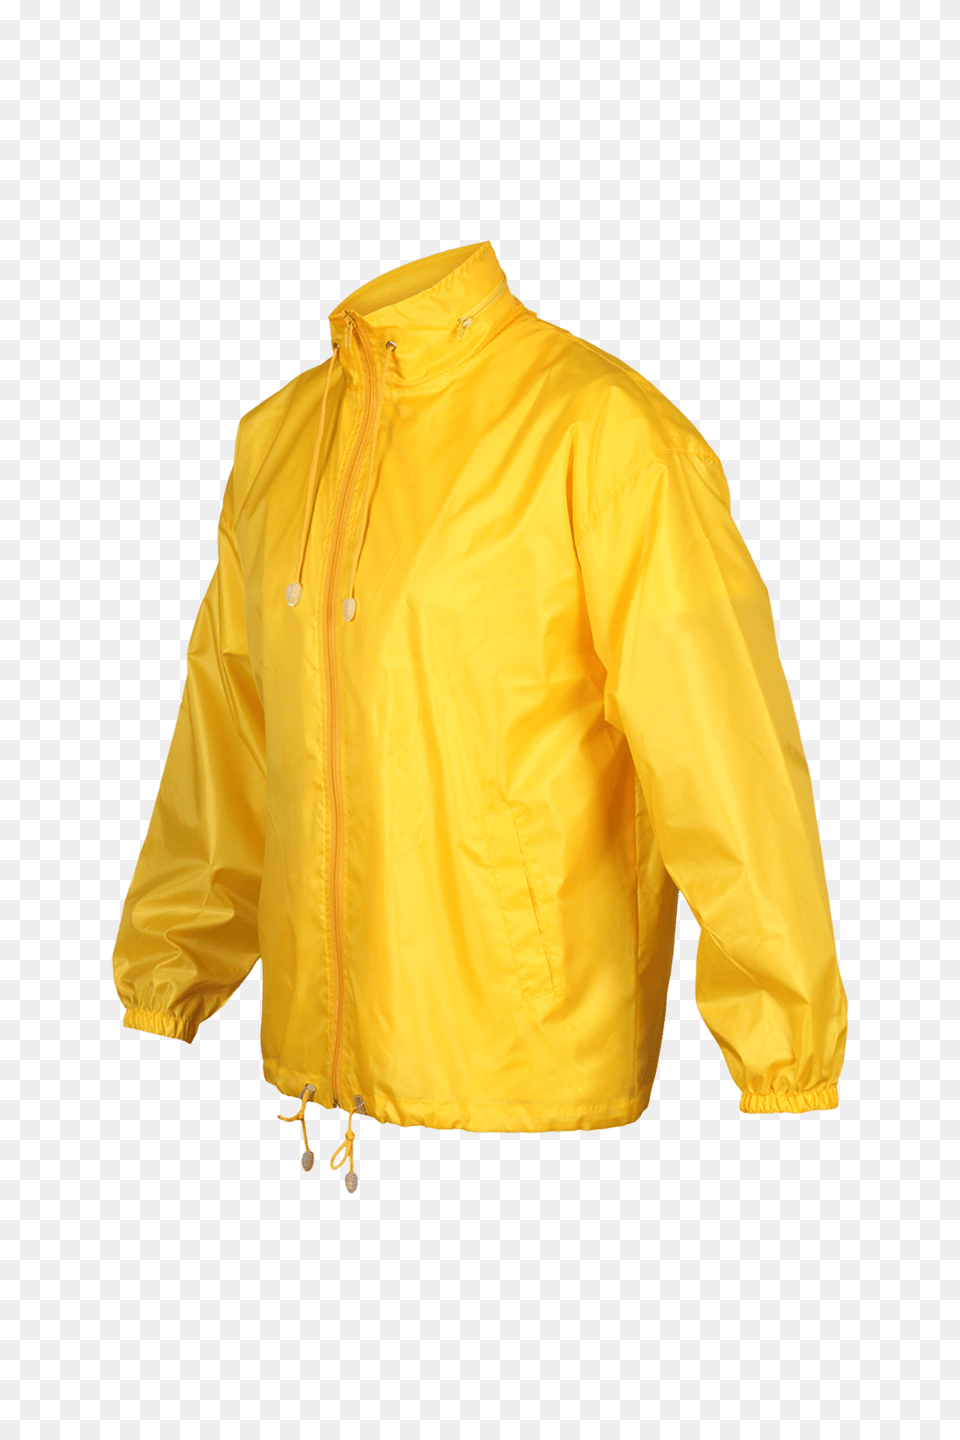 Raincoat, Clothing, Coat, Blouse, Jacket Free Png